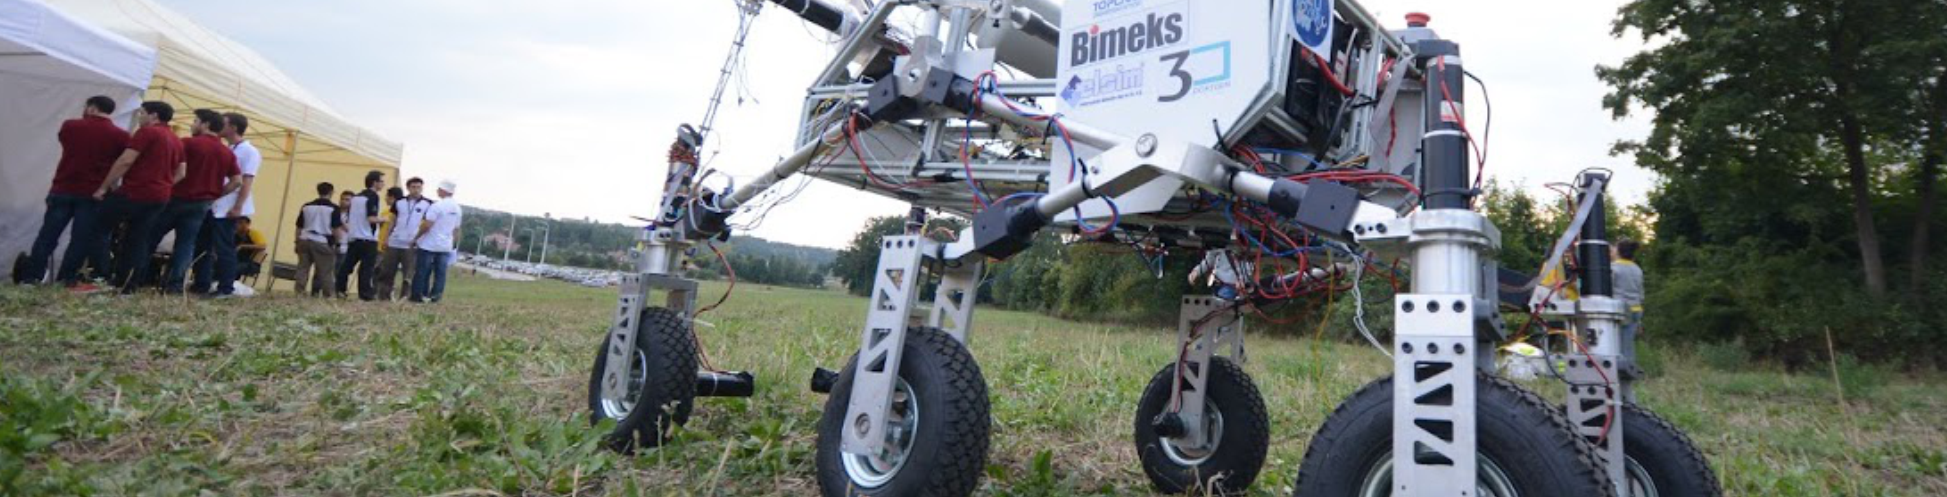 ÖzÜ Rover Takımı Geliştirdiği Mars Gezgini’nin Parçalarını 3D Yazıcıda Üretti